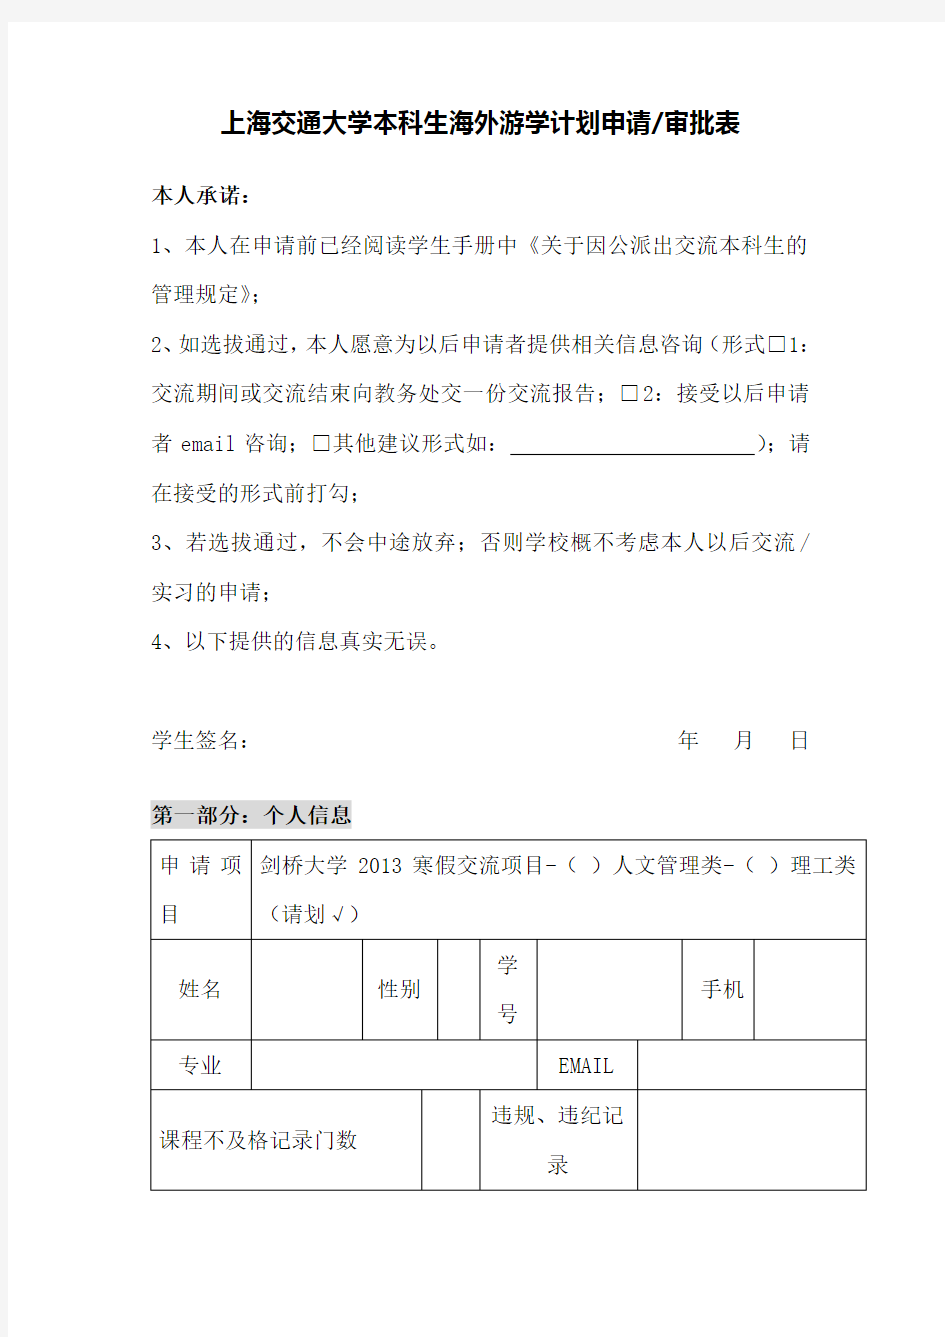 上海交通大学本科生海外游学计划申请审批表